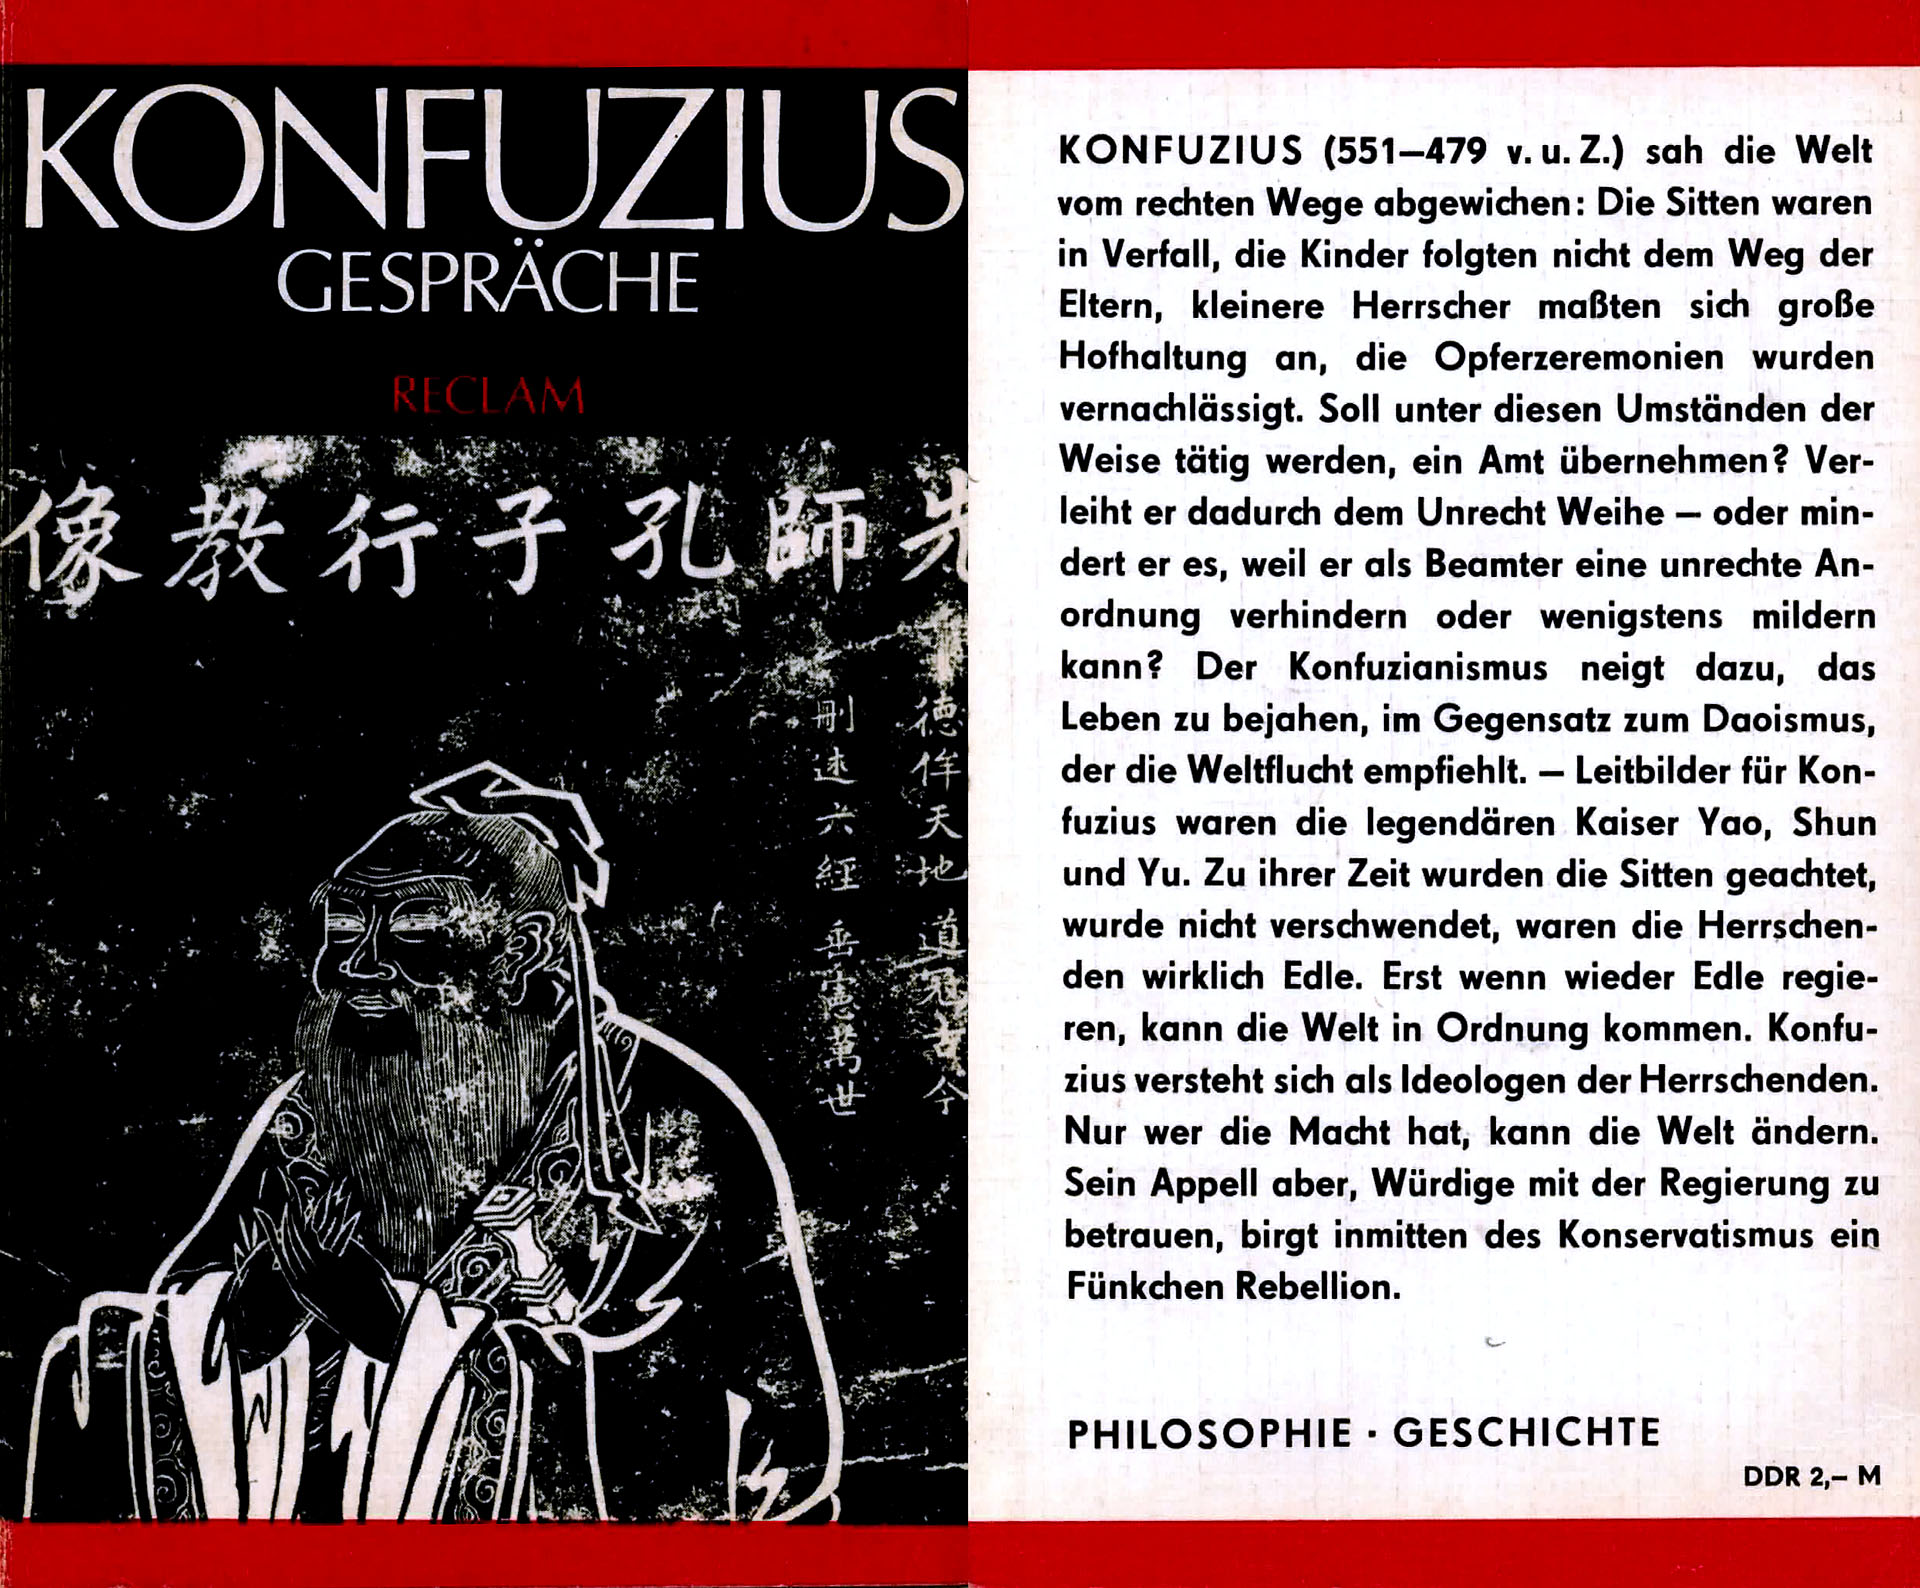 Konfuzius Gespräche - Überetzer und Herausgeber: Moritz, Ralf